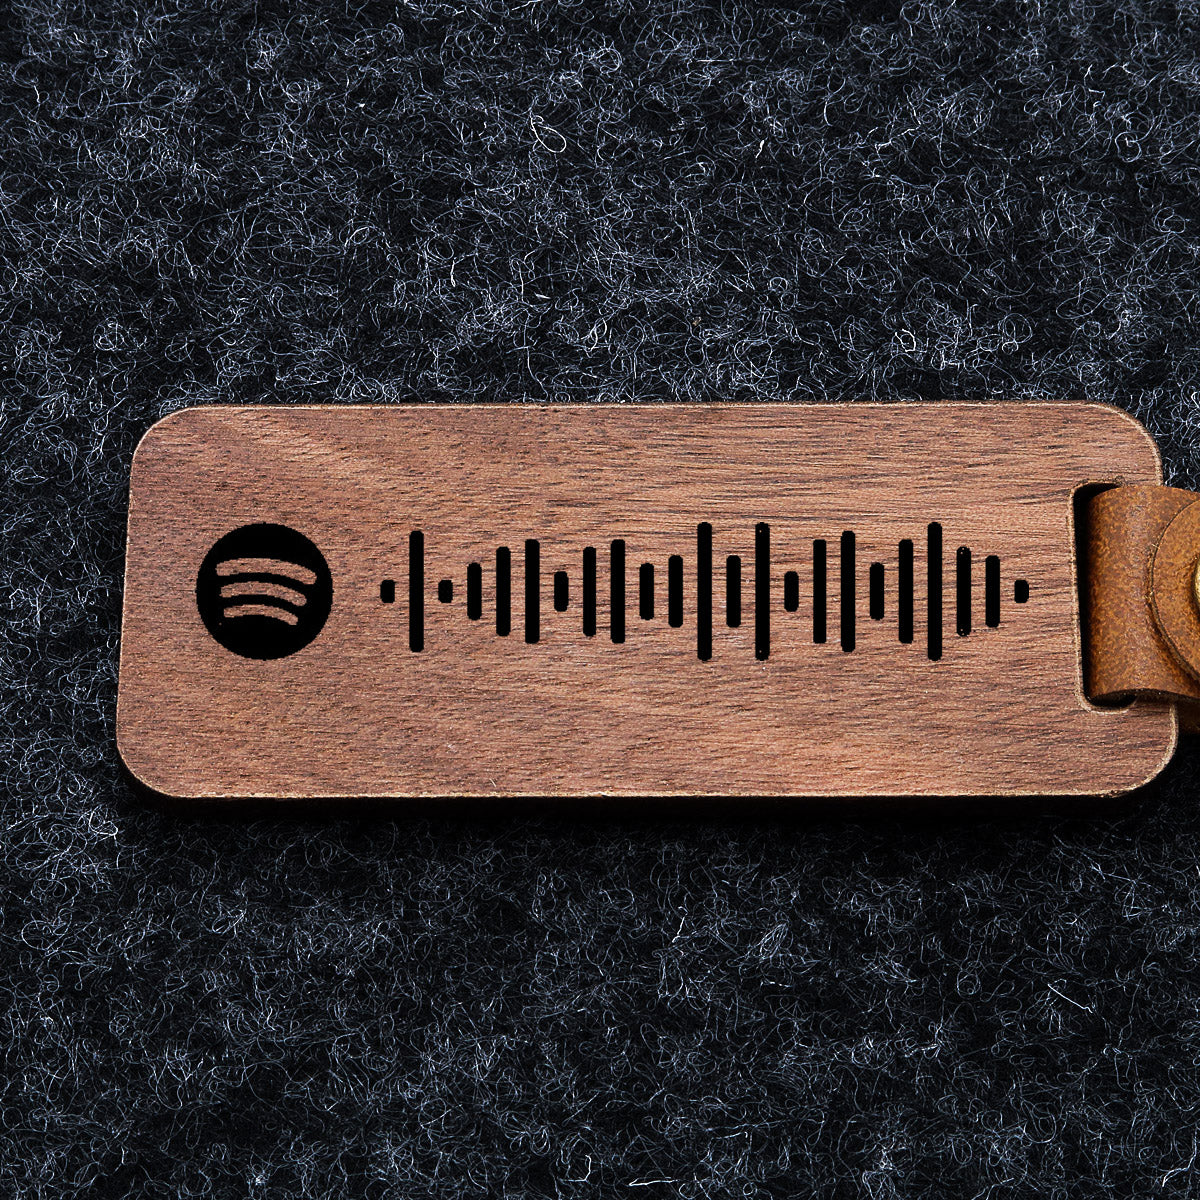 Spotify puinen avaimenperä, jossa on Spotify-koodi